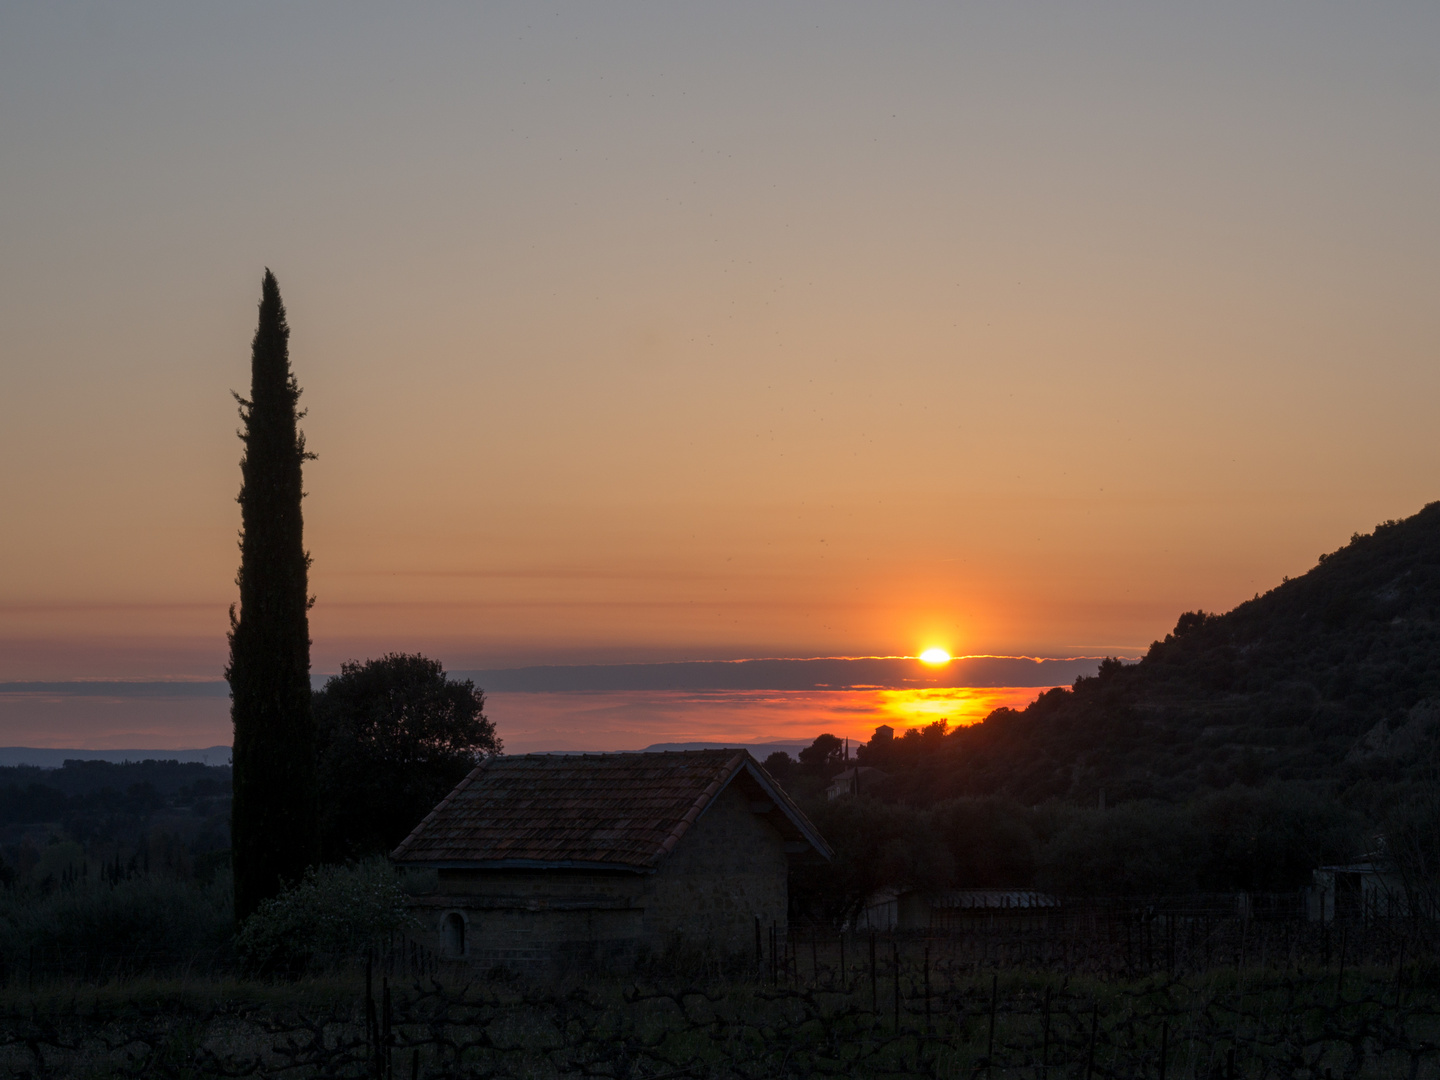 Sonnenuntergang in Südfrankreich